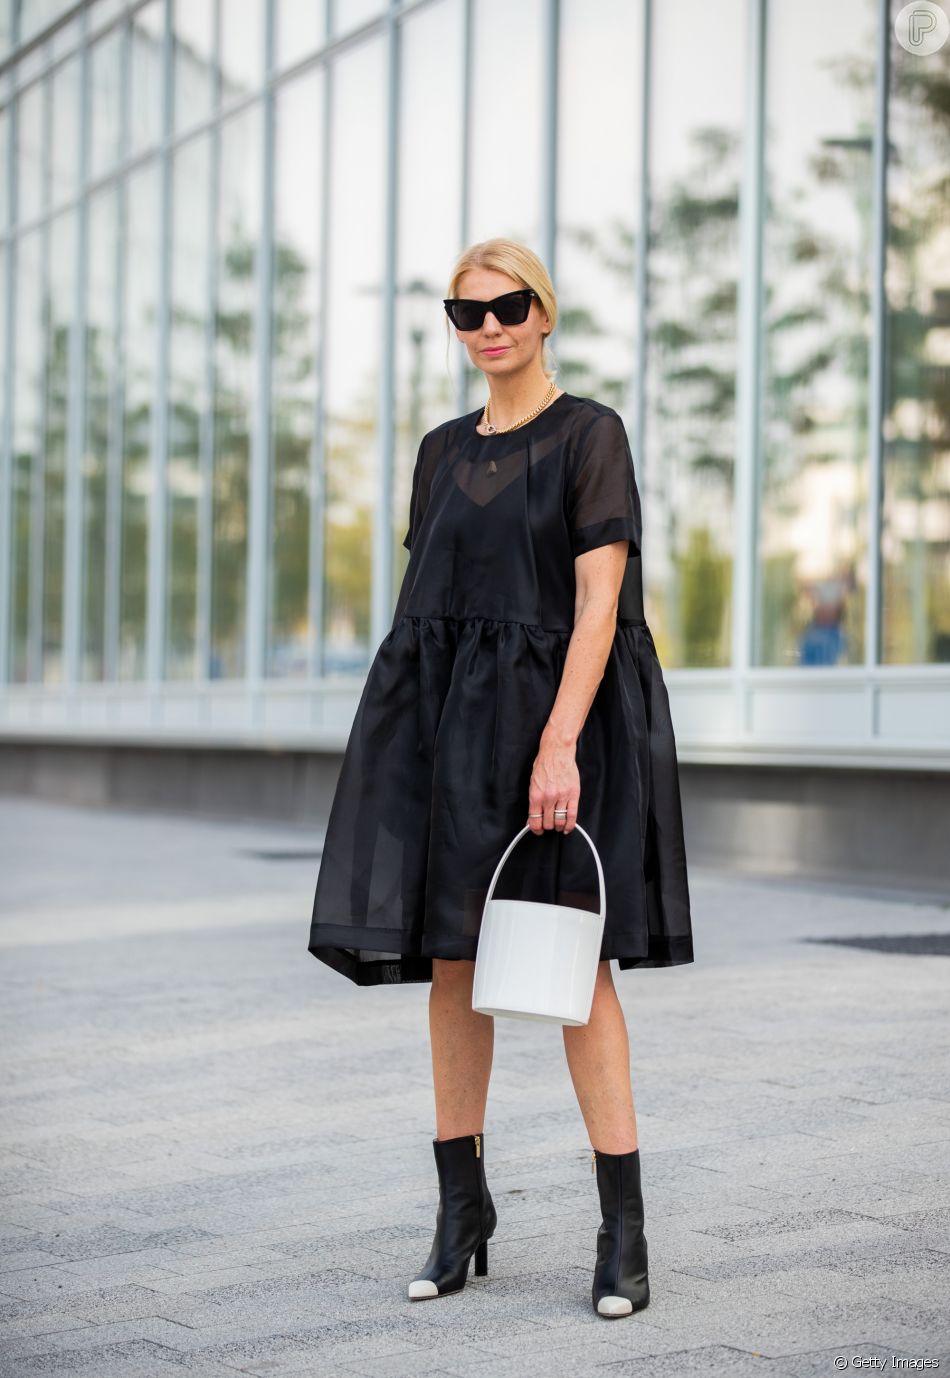 Vestido preto no Ano-Novo: aposte em um modelo transparente e amplo para curtir a virada do ano e atrair nobreza e poder